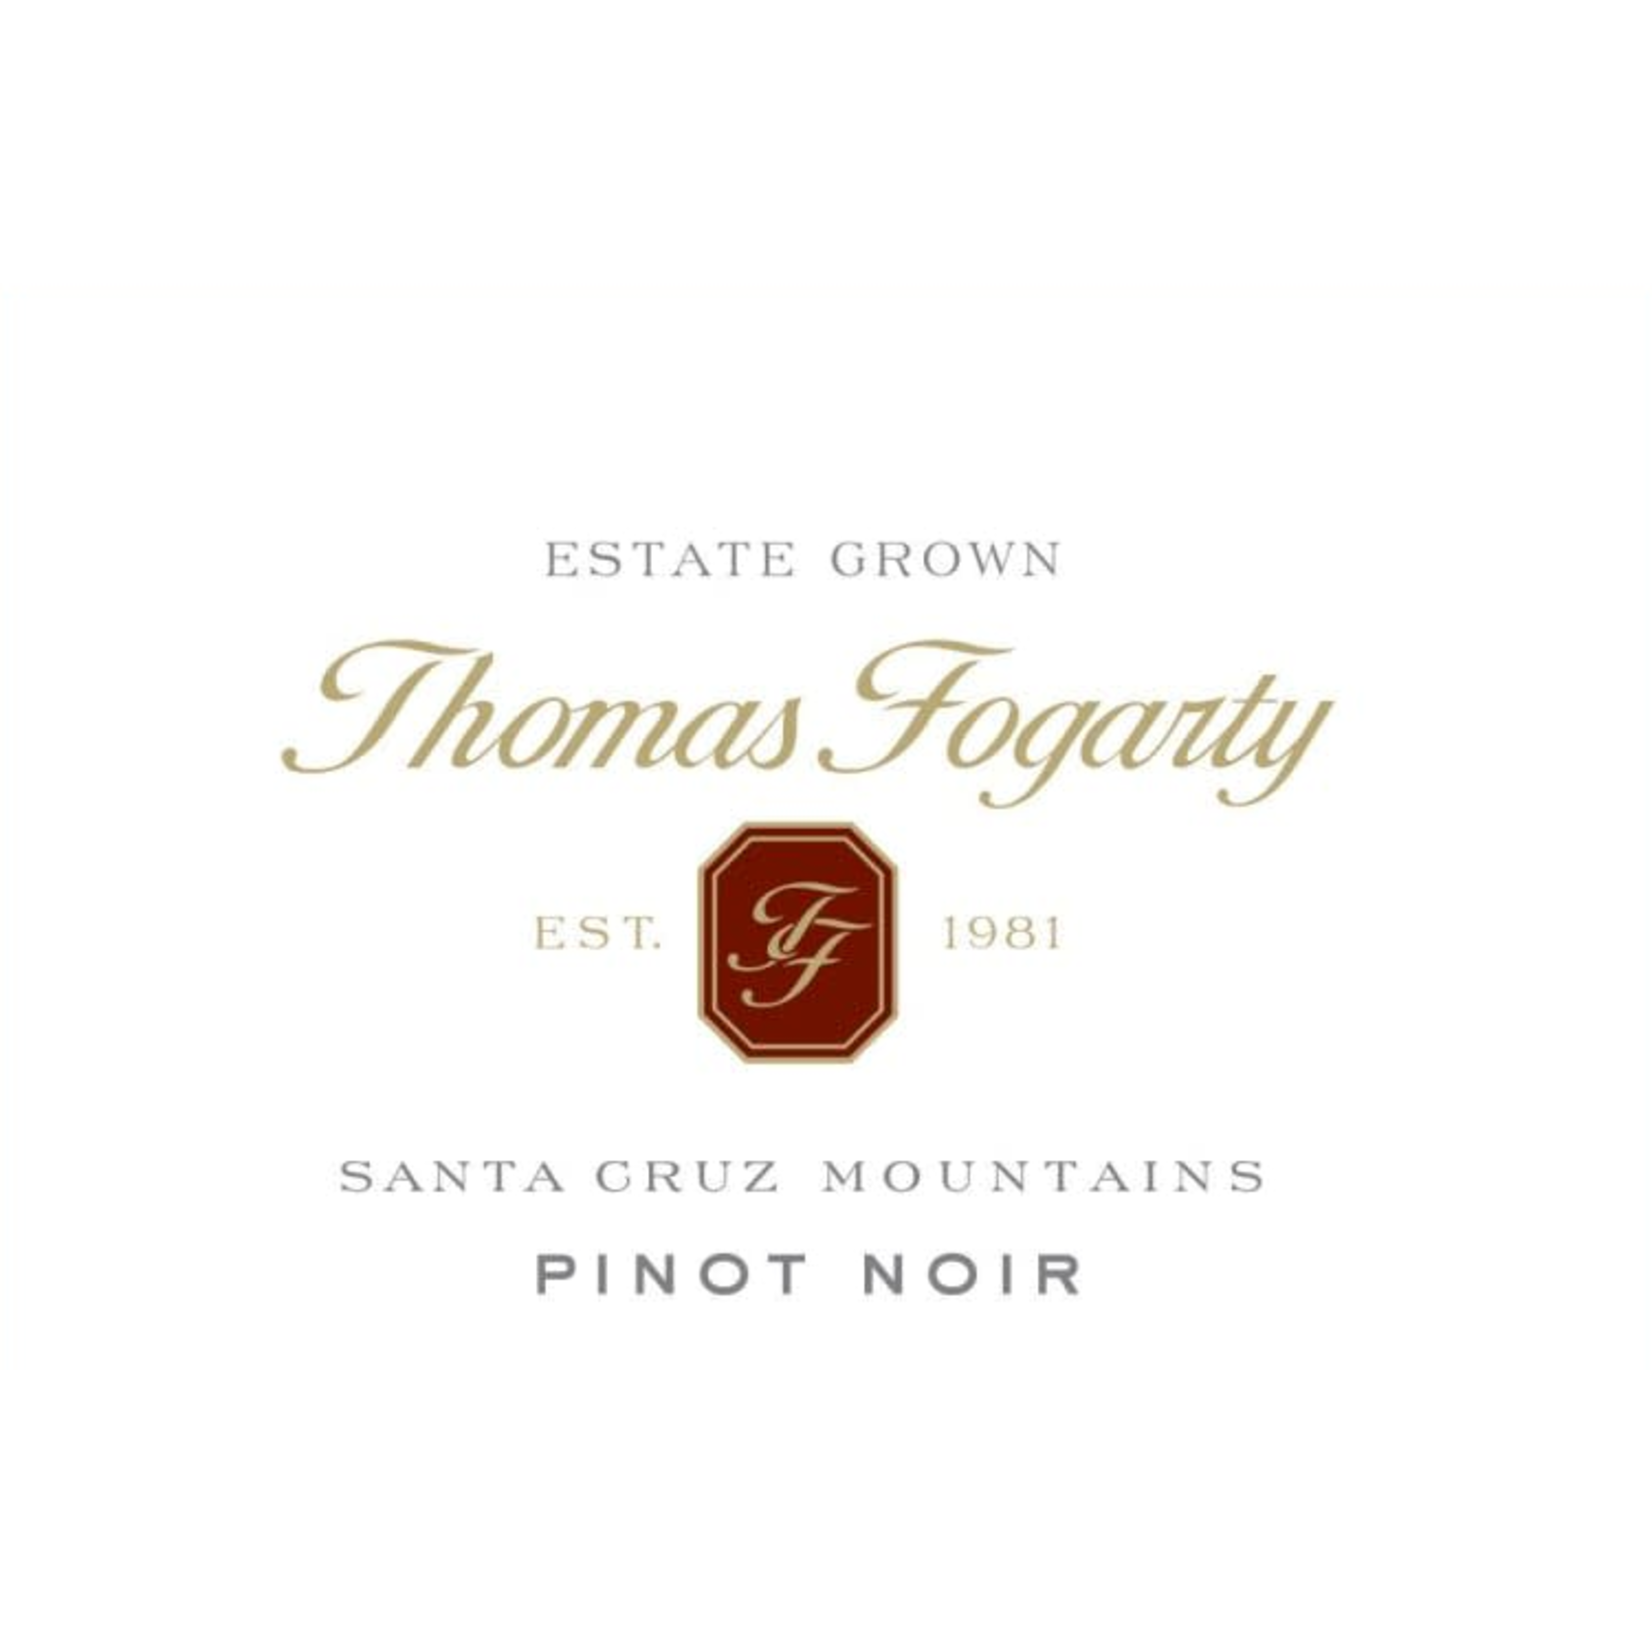 Thomas FogartyWinery Thomas Fogarty Santa Cruz Mountains Pinot Noir 2018   California